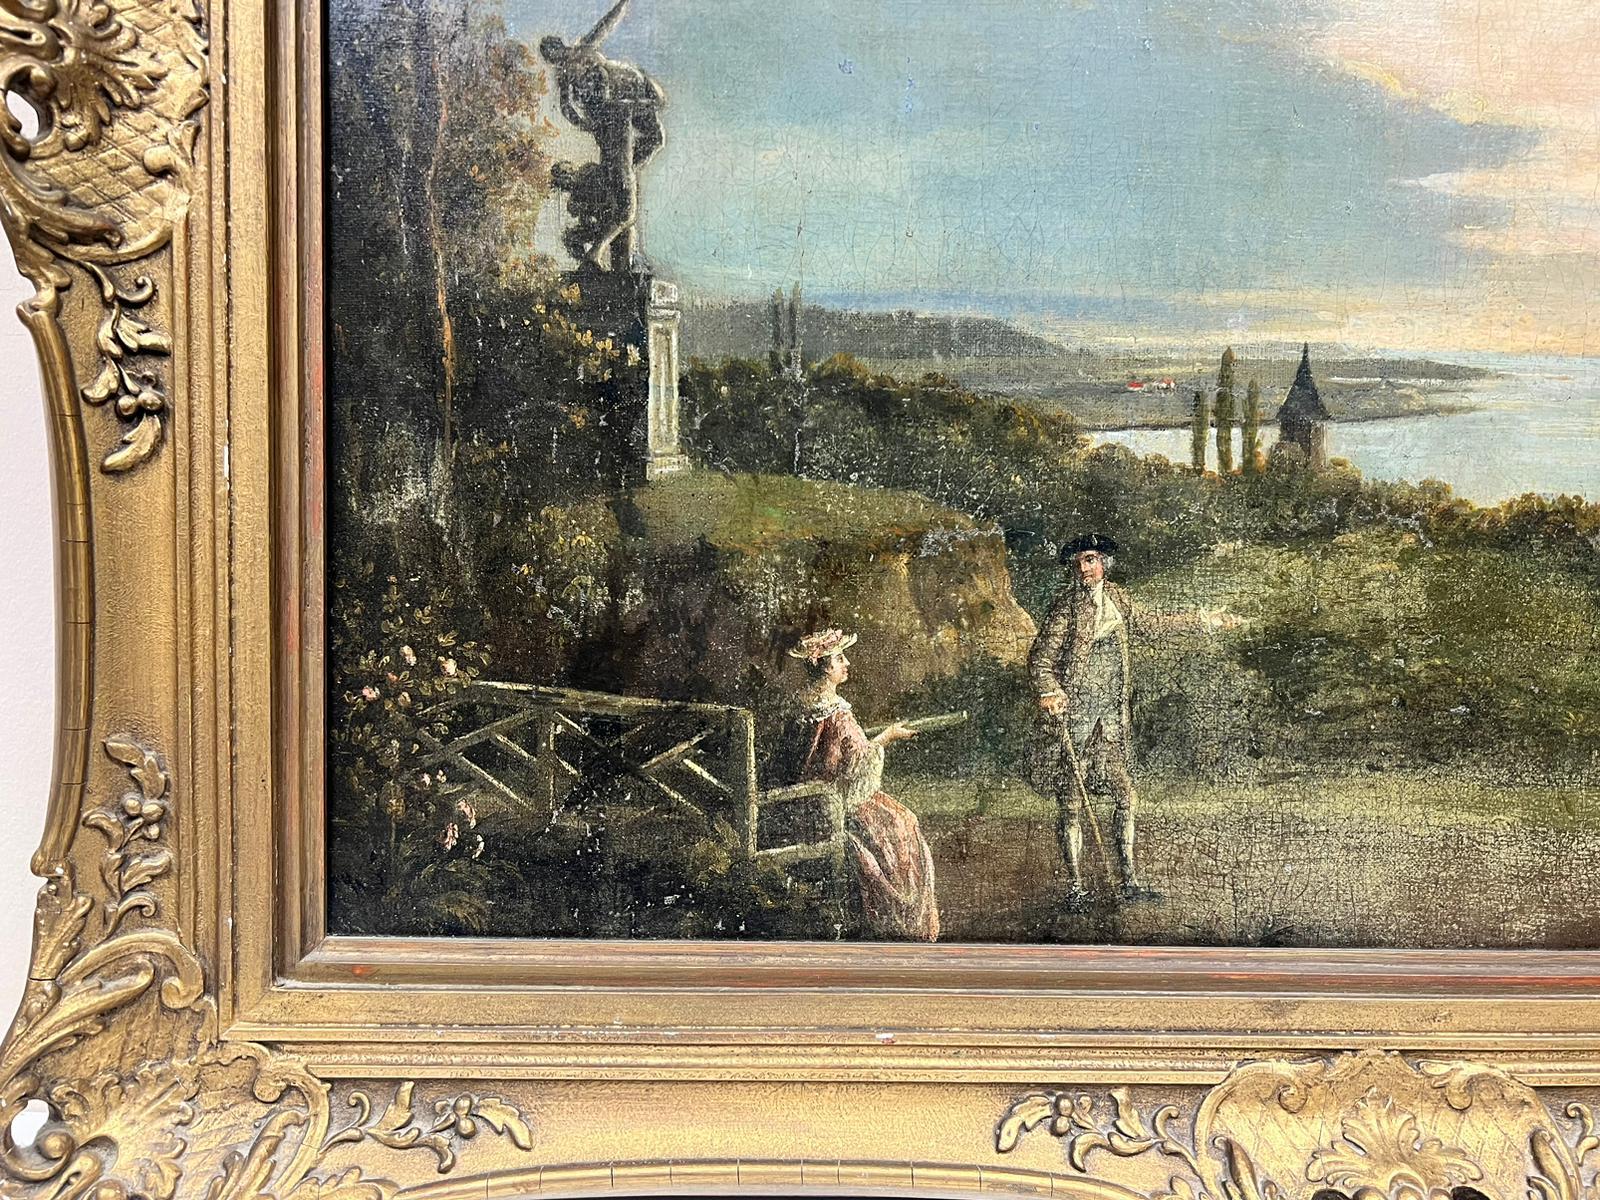 Jardin paysager à l'italienne avec des ornements classiques, y compris les femmes Sabin de Giambologna et une urne classique, vue sur une baie au-delà.
Coplestone Warre Bampfylde (britannique 1720-1791)
huile sur toile, encadrée
encadré : 30 x 35